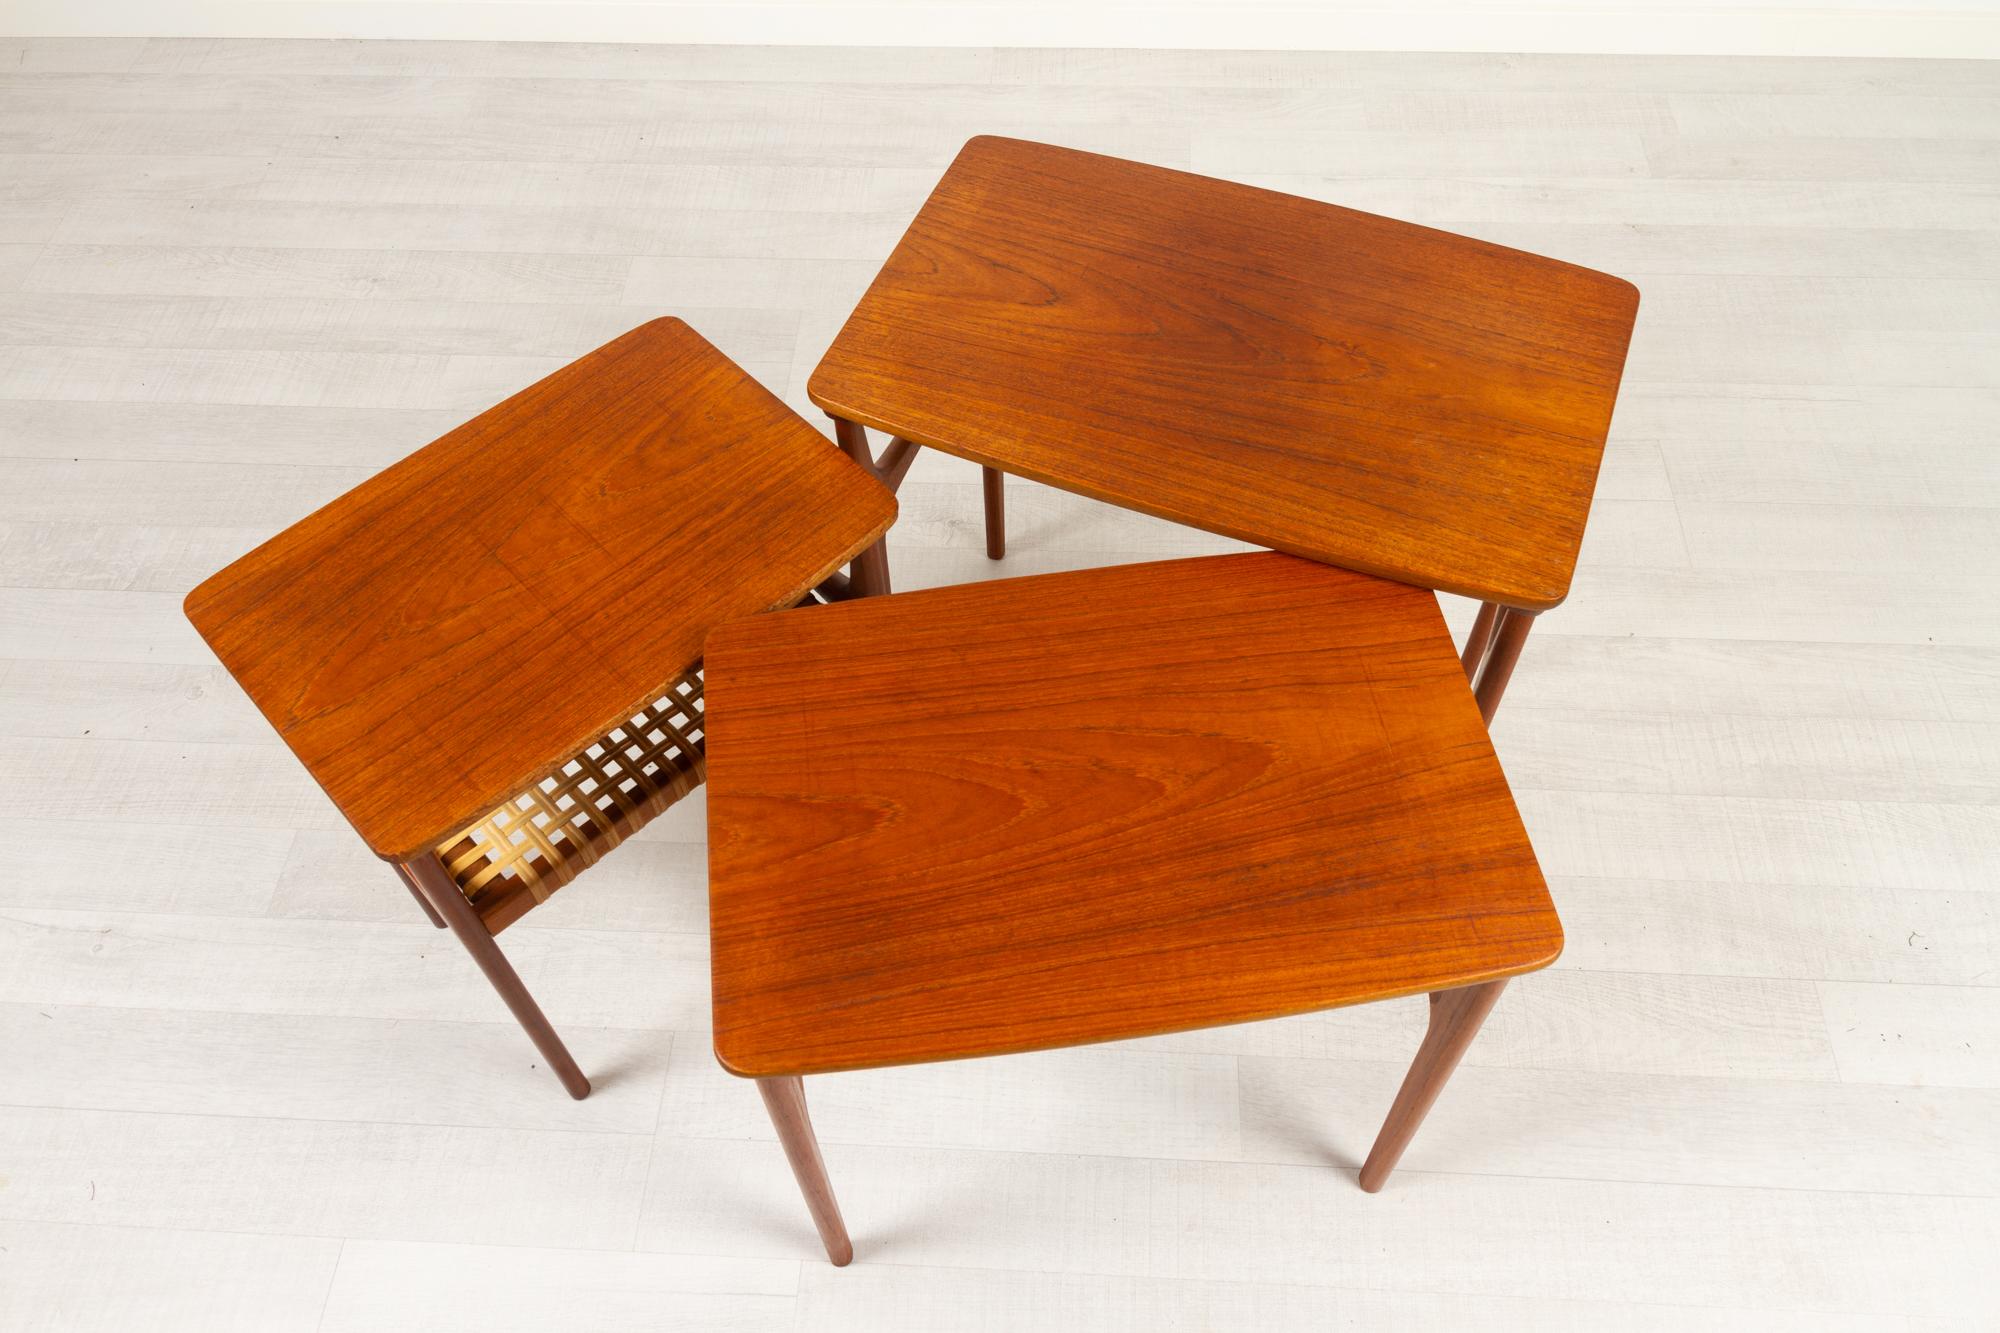 Vintage Danish Teak Nesting Tables by Erling Torvits for Heltborg Møbler 1950s For Sale 3